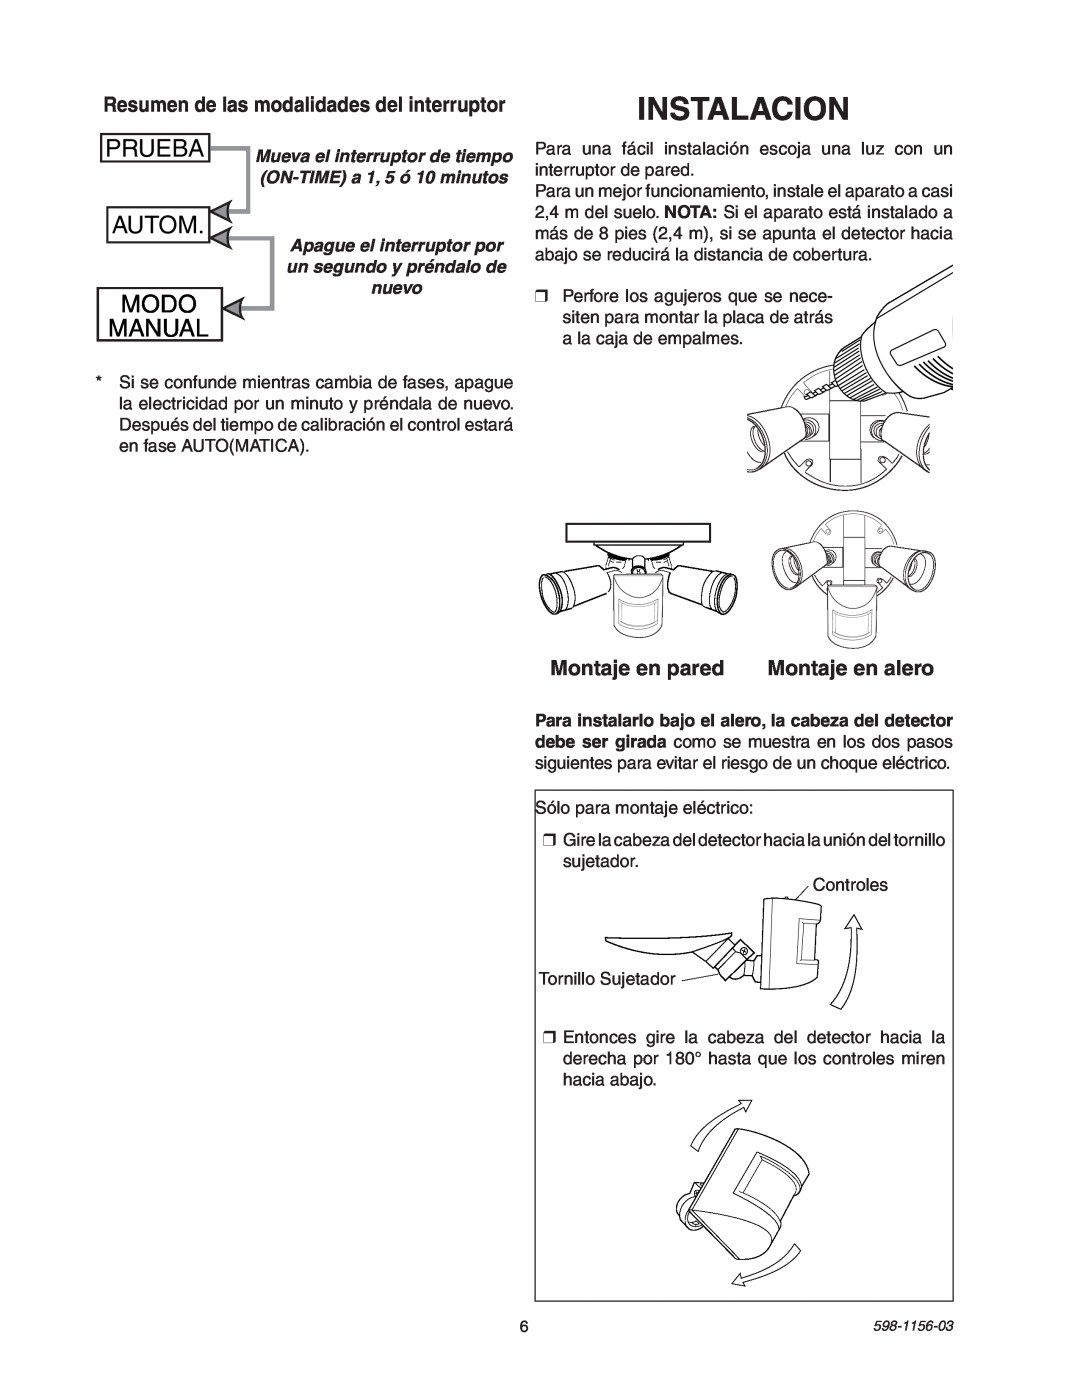 Heath Zenith SH-5408 manual Instalacion, Prueba, Autom, Modo, Manual, Resumen de las modalidades del interruptor, nuevo 